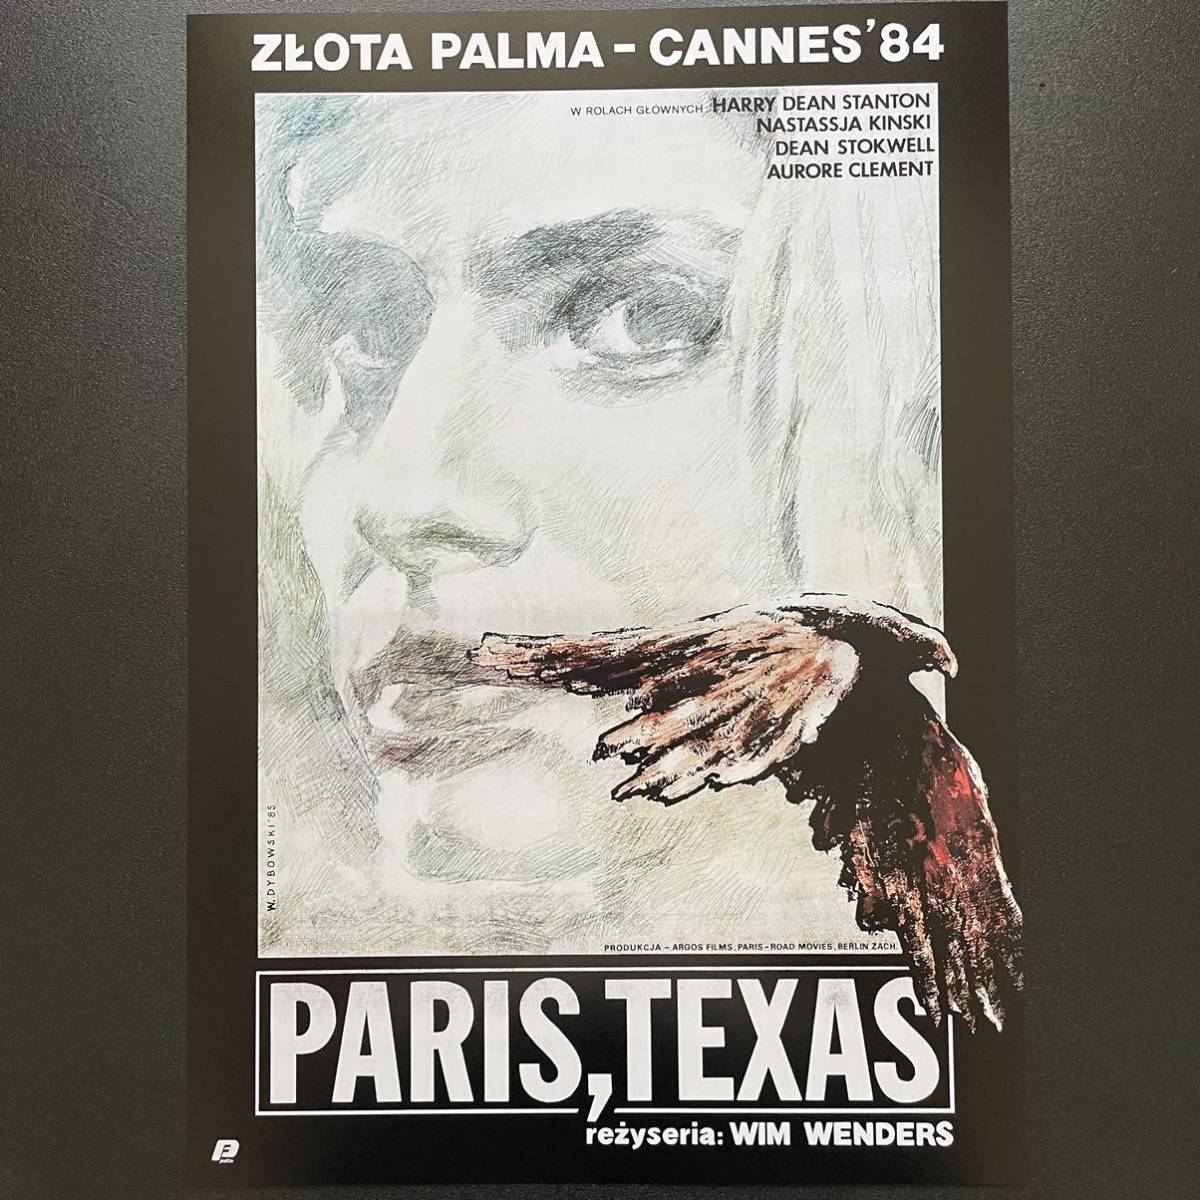 ポーランド版ポスター『パリ、テキサス』 (Paris,Texas)★ヴィム・ヴェンダース/ライ・クーダー/ルート66の画像1